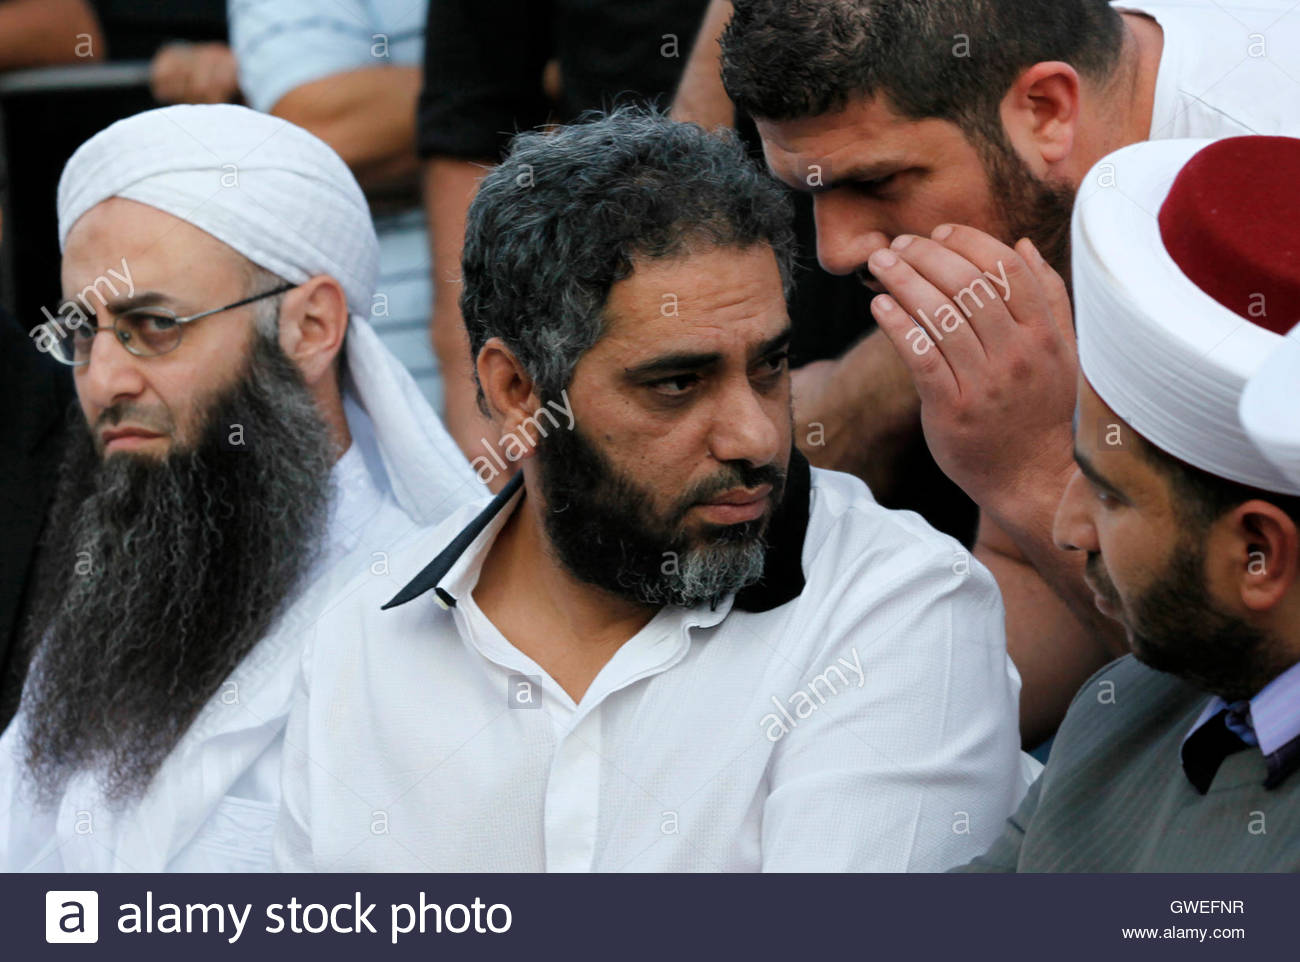 lebanons-sunni-muslim-salafist-leader-ahmad-al-aseer-l-and-lebanese-GWEFNR.jpg